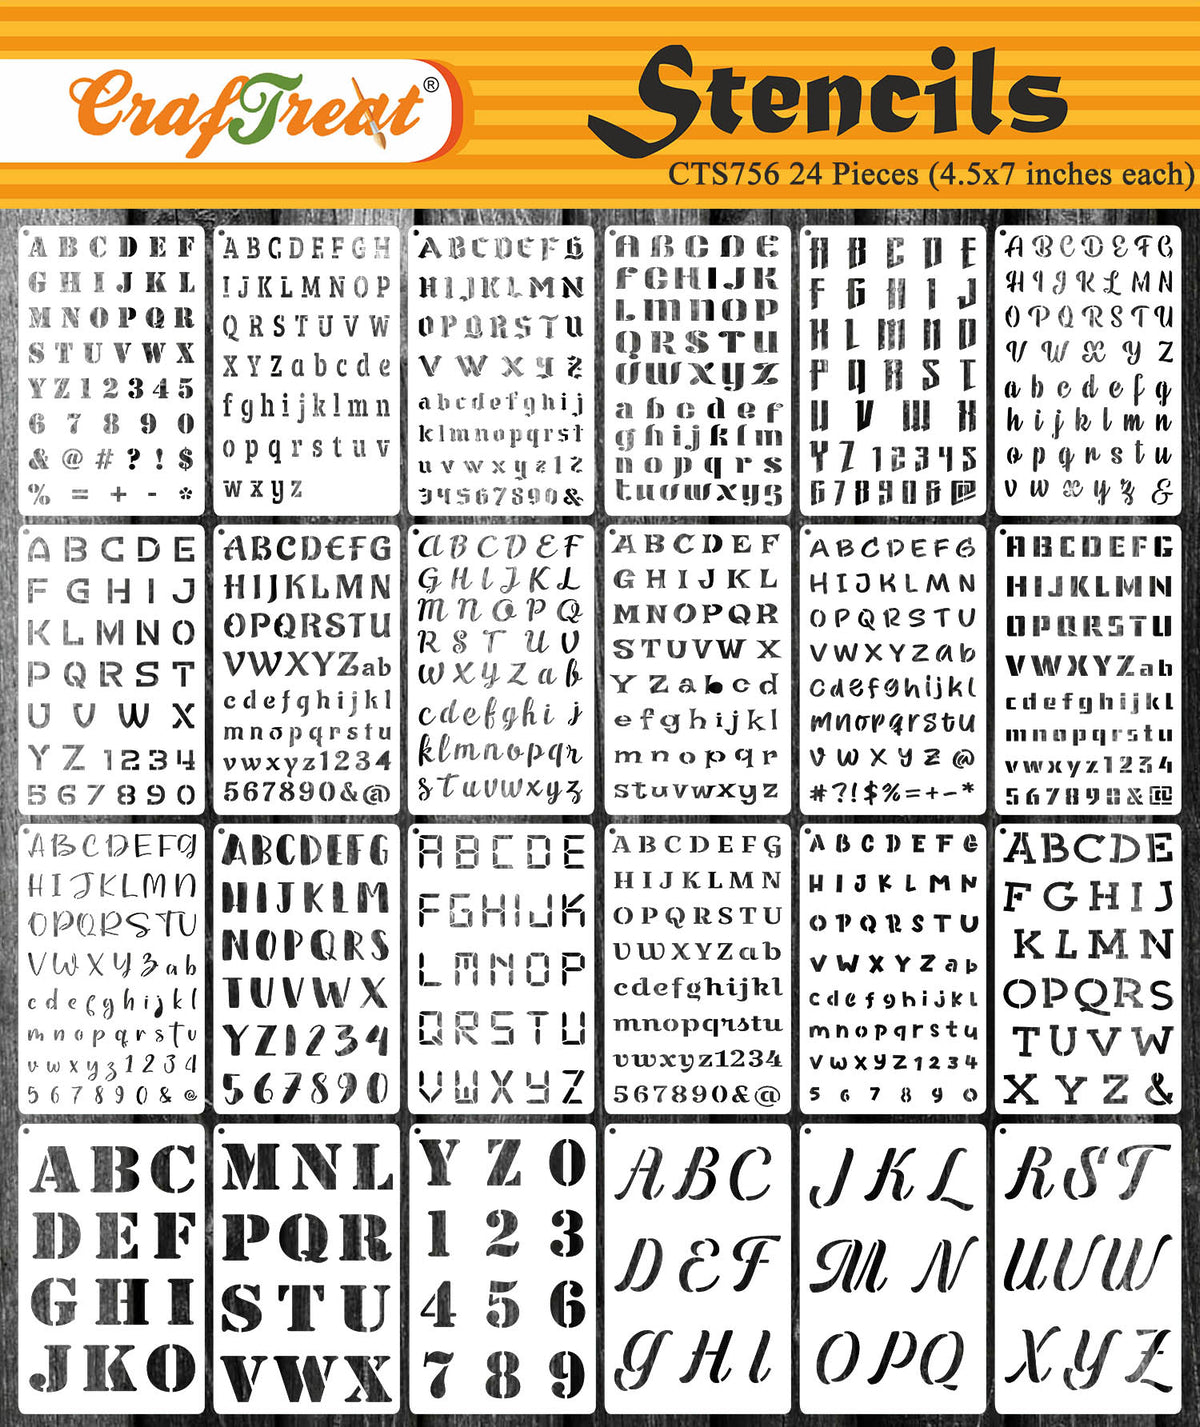  Alphabet Letter Stencils 4 Inch, 36 Pcs Reusable